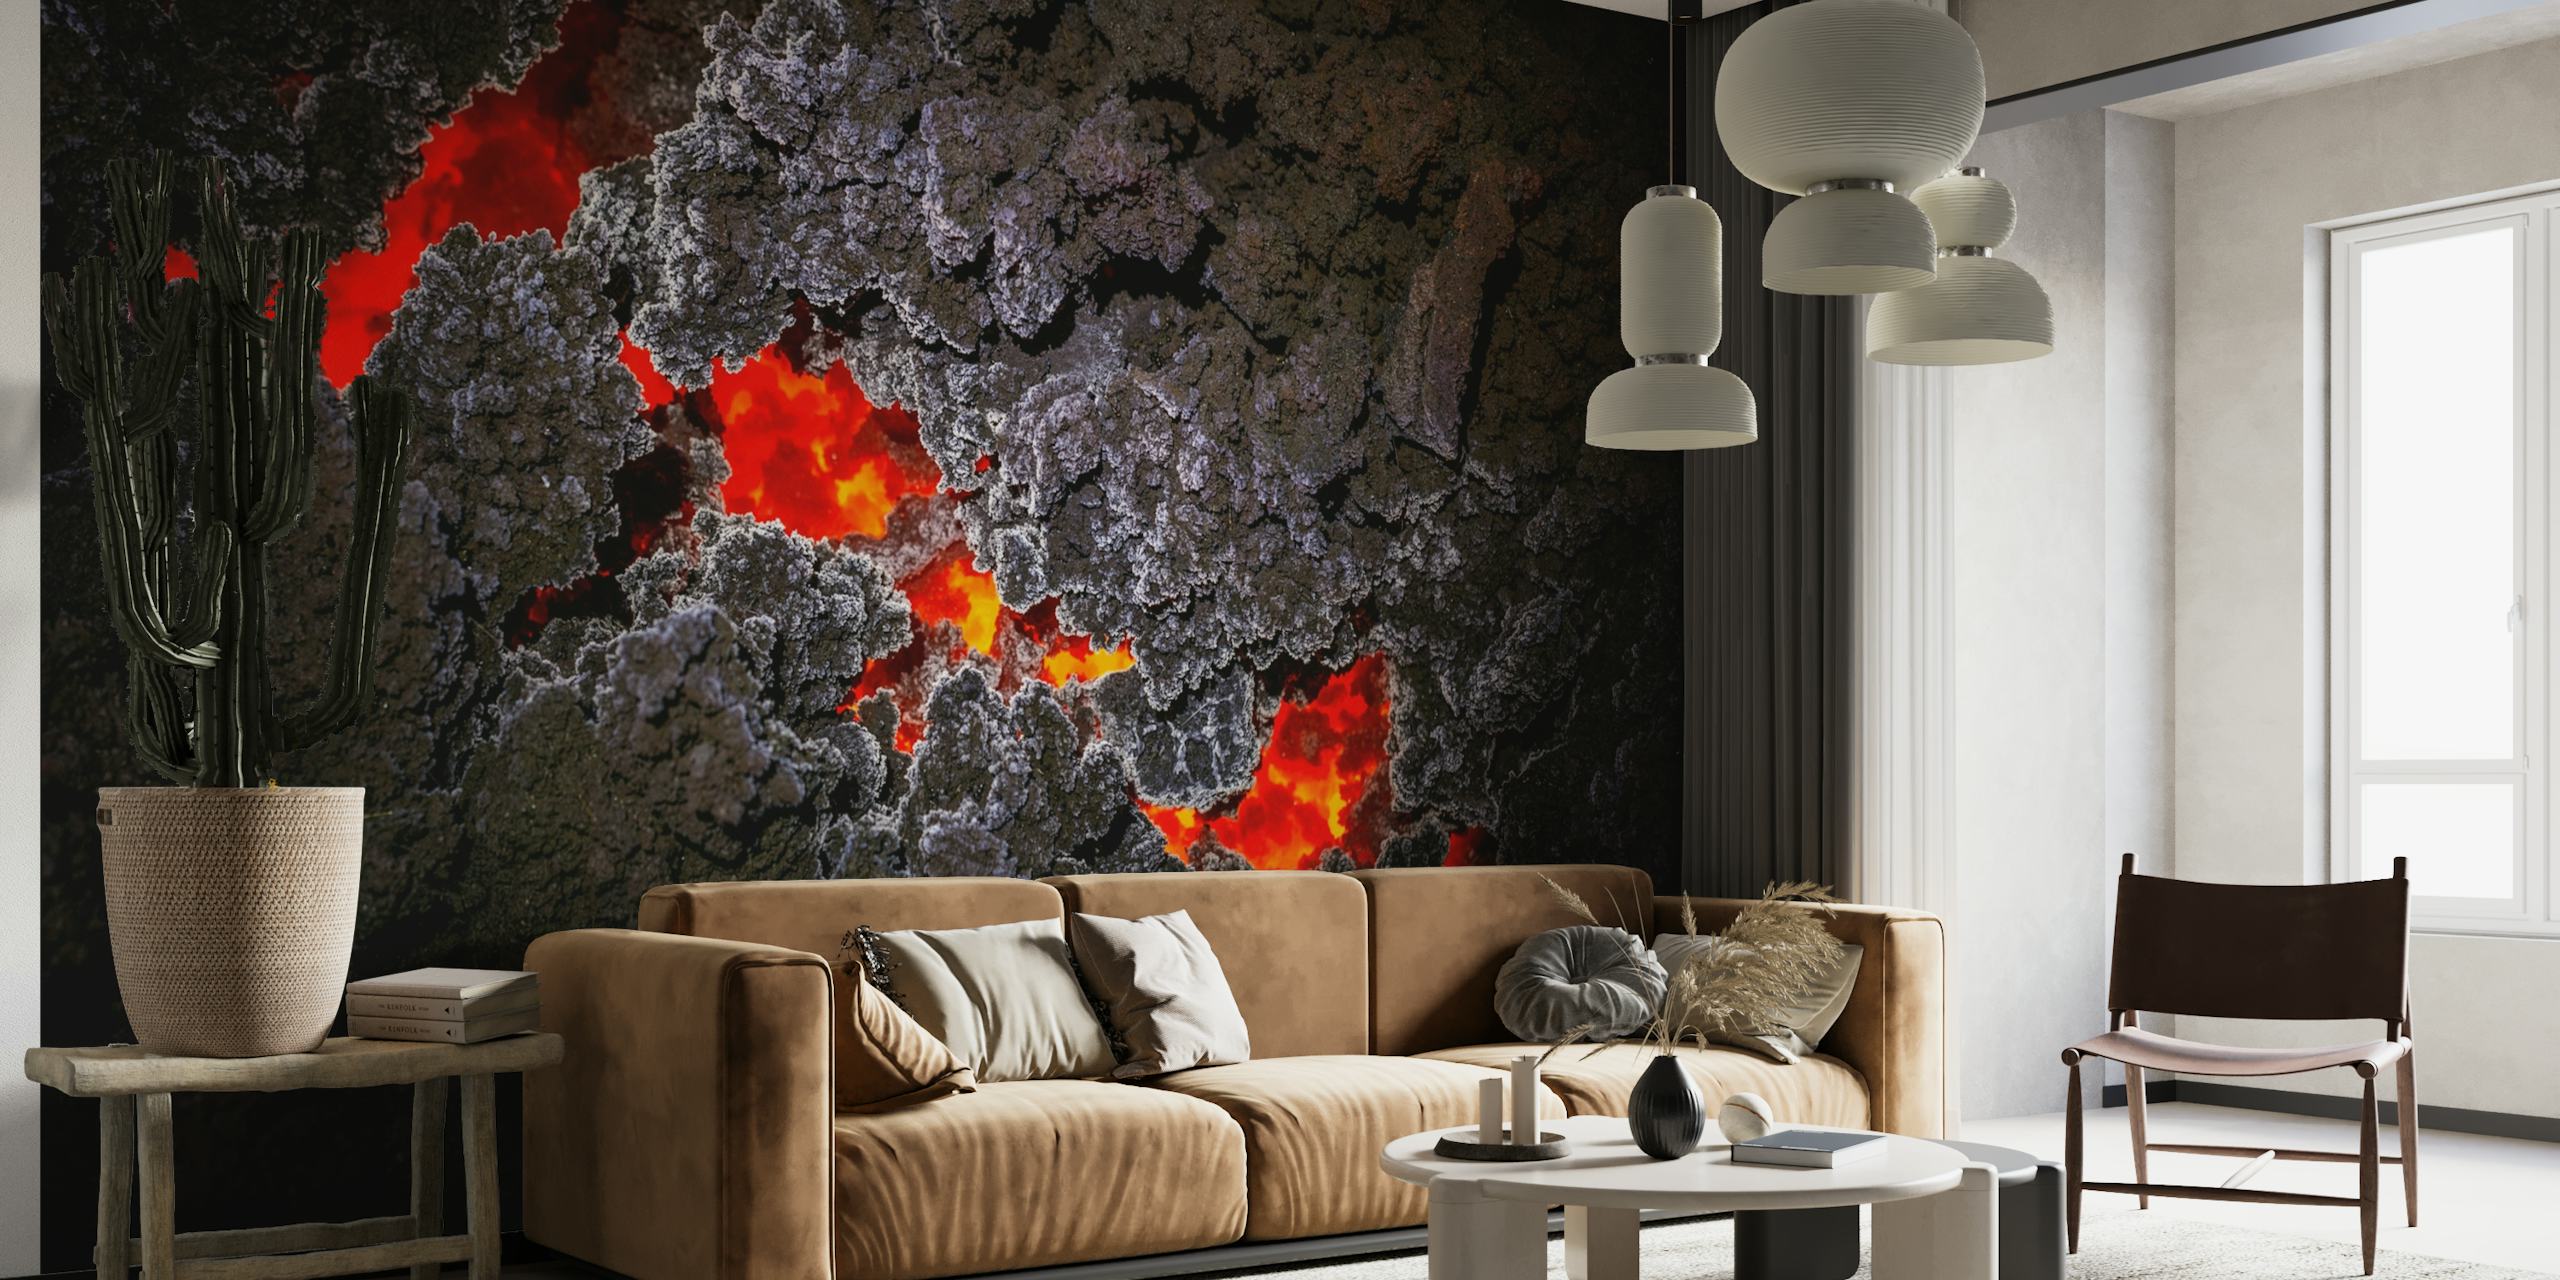 Abstraktes Wandbild mit roten kristallinen Mustern auf dunklem Hintergrund, die eine Geode simulieren